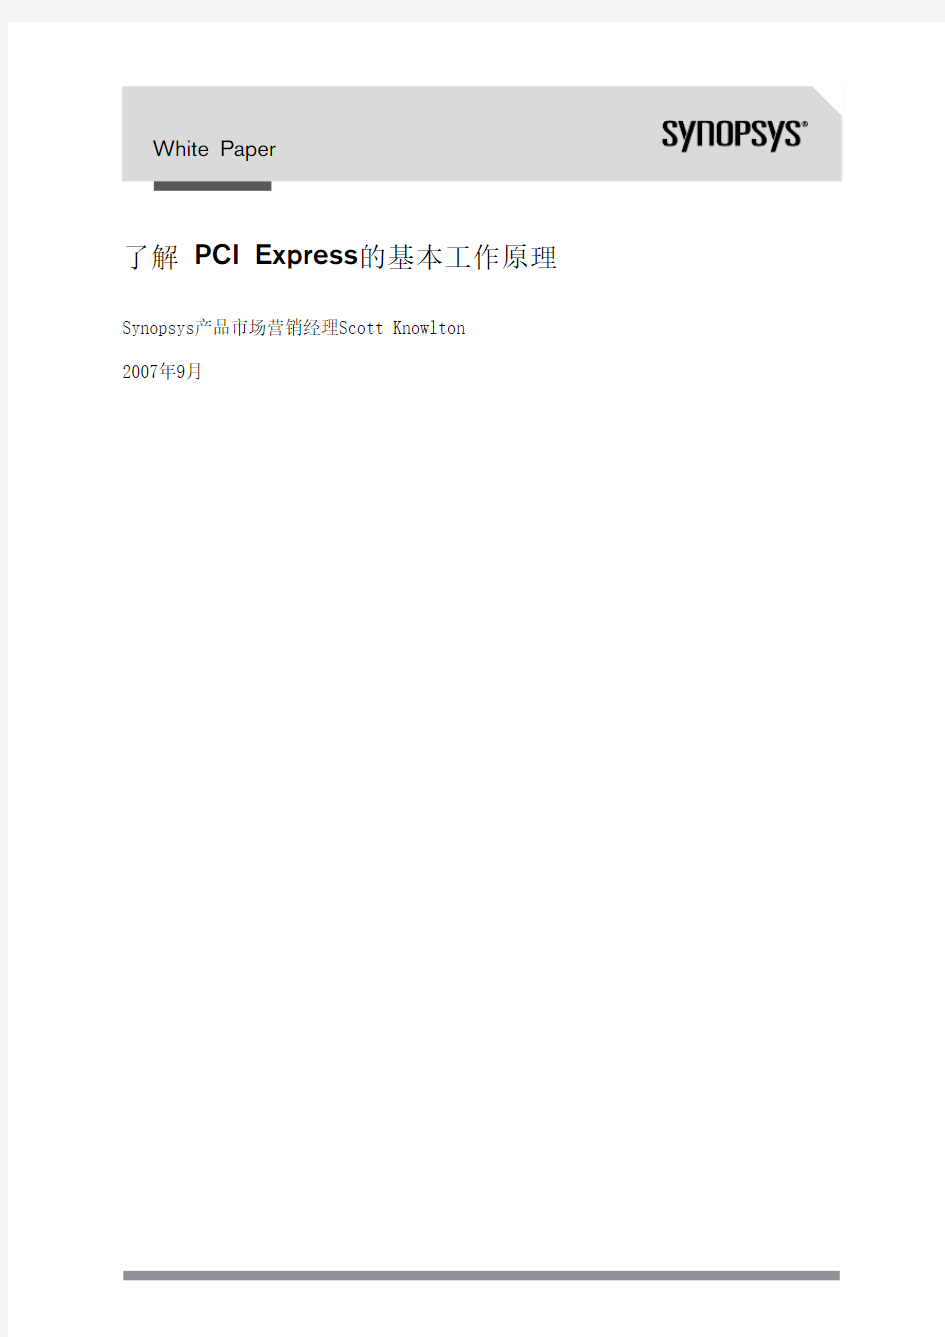 了解 PCI Express 的基本工作原理